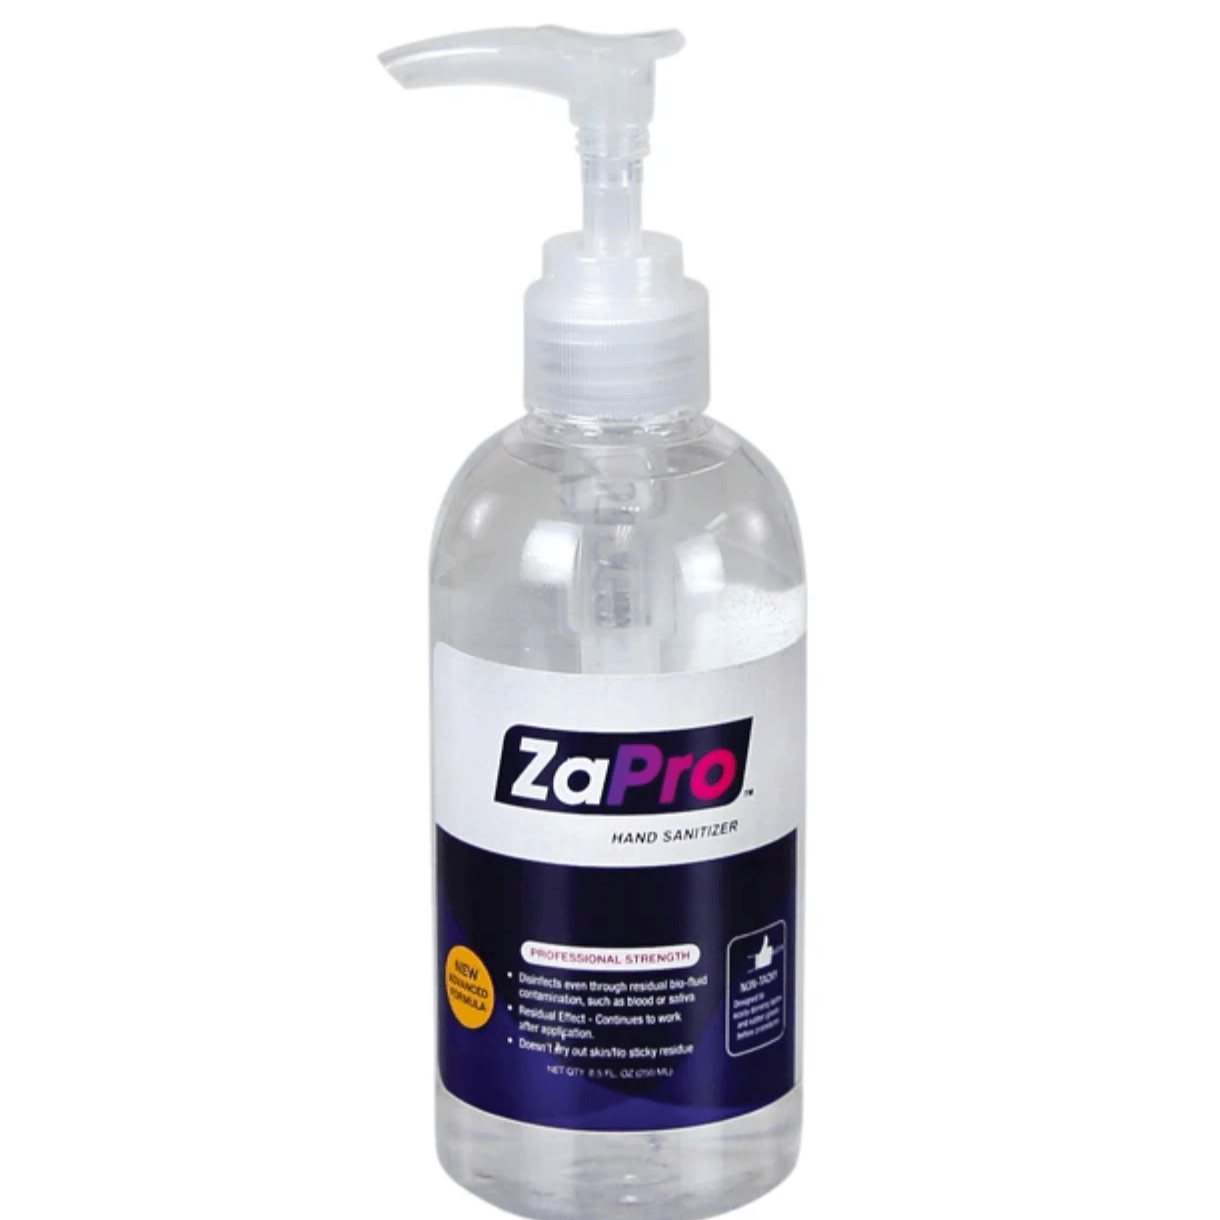 ZaPro Hand Sanitizer - amdlasers